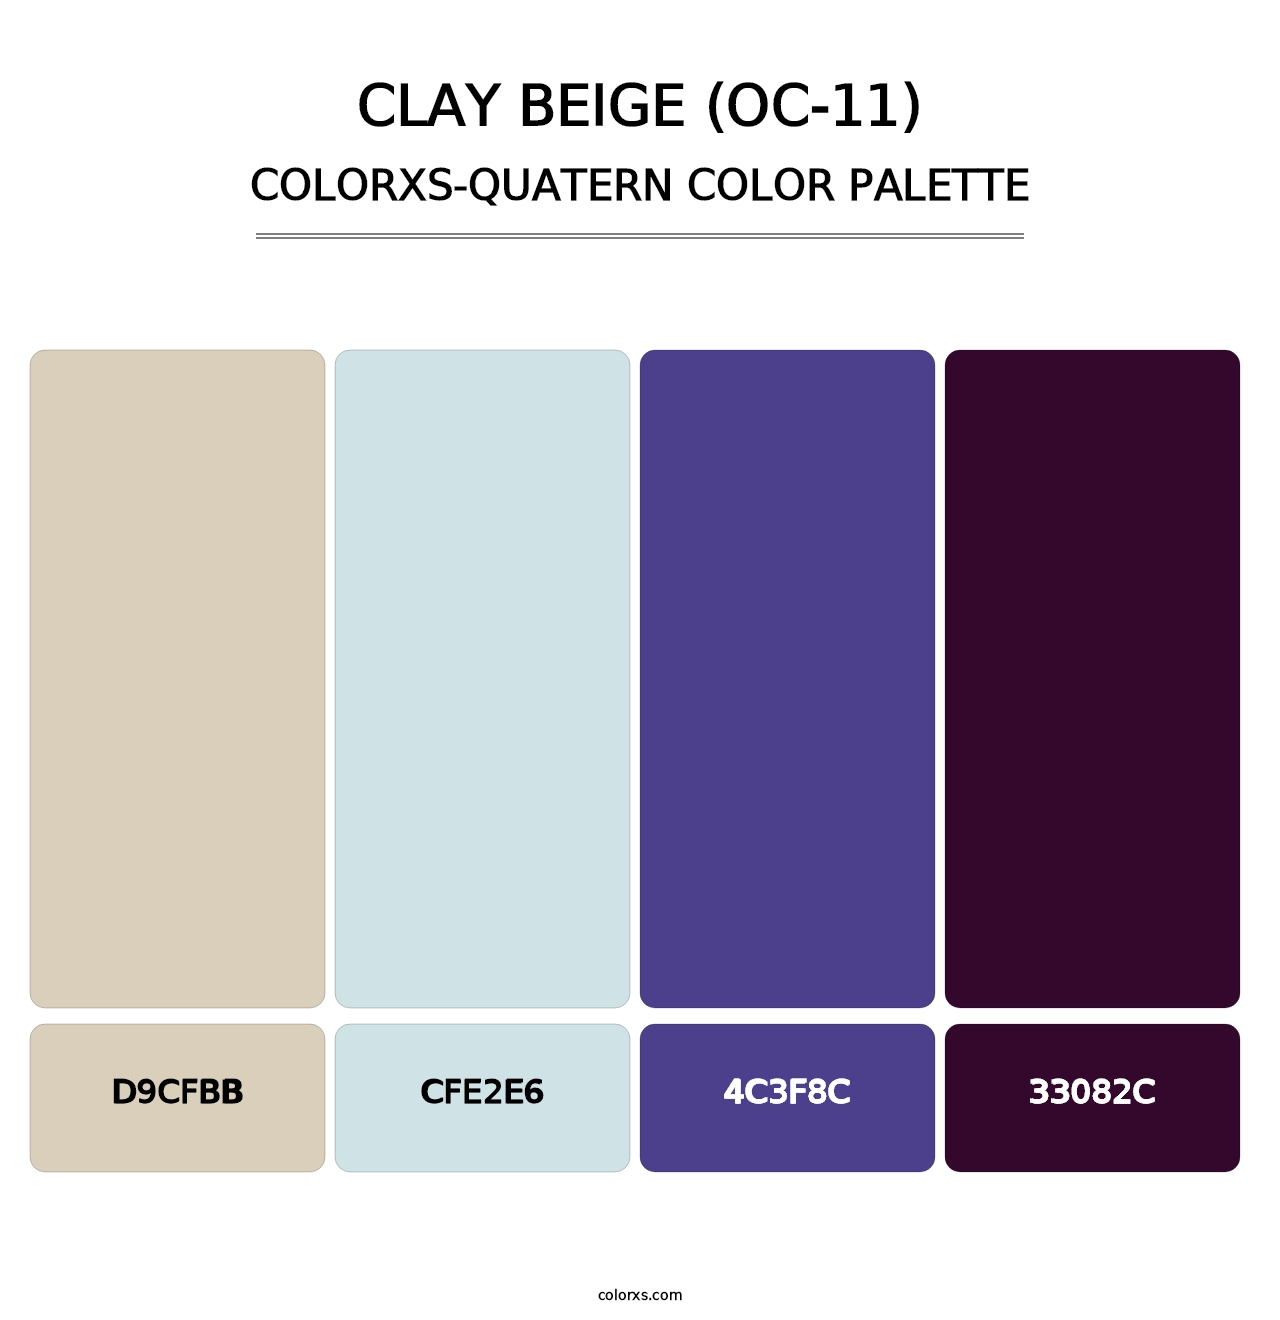 Clay Beige (OC-11) - Colorxs Quatern Palette